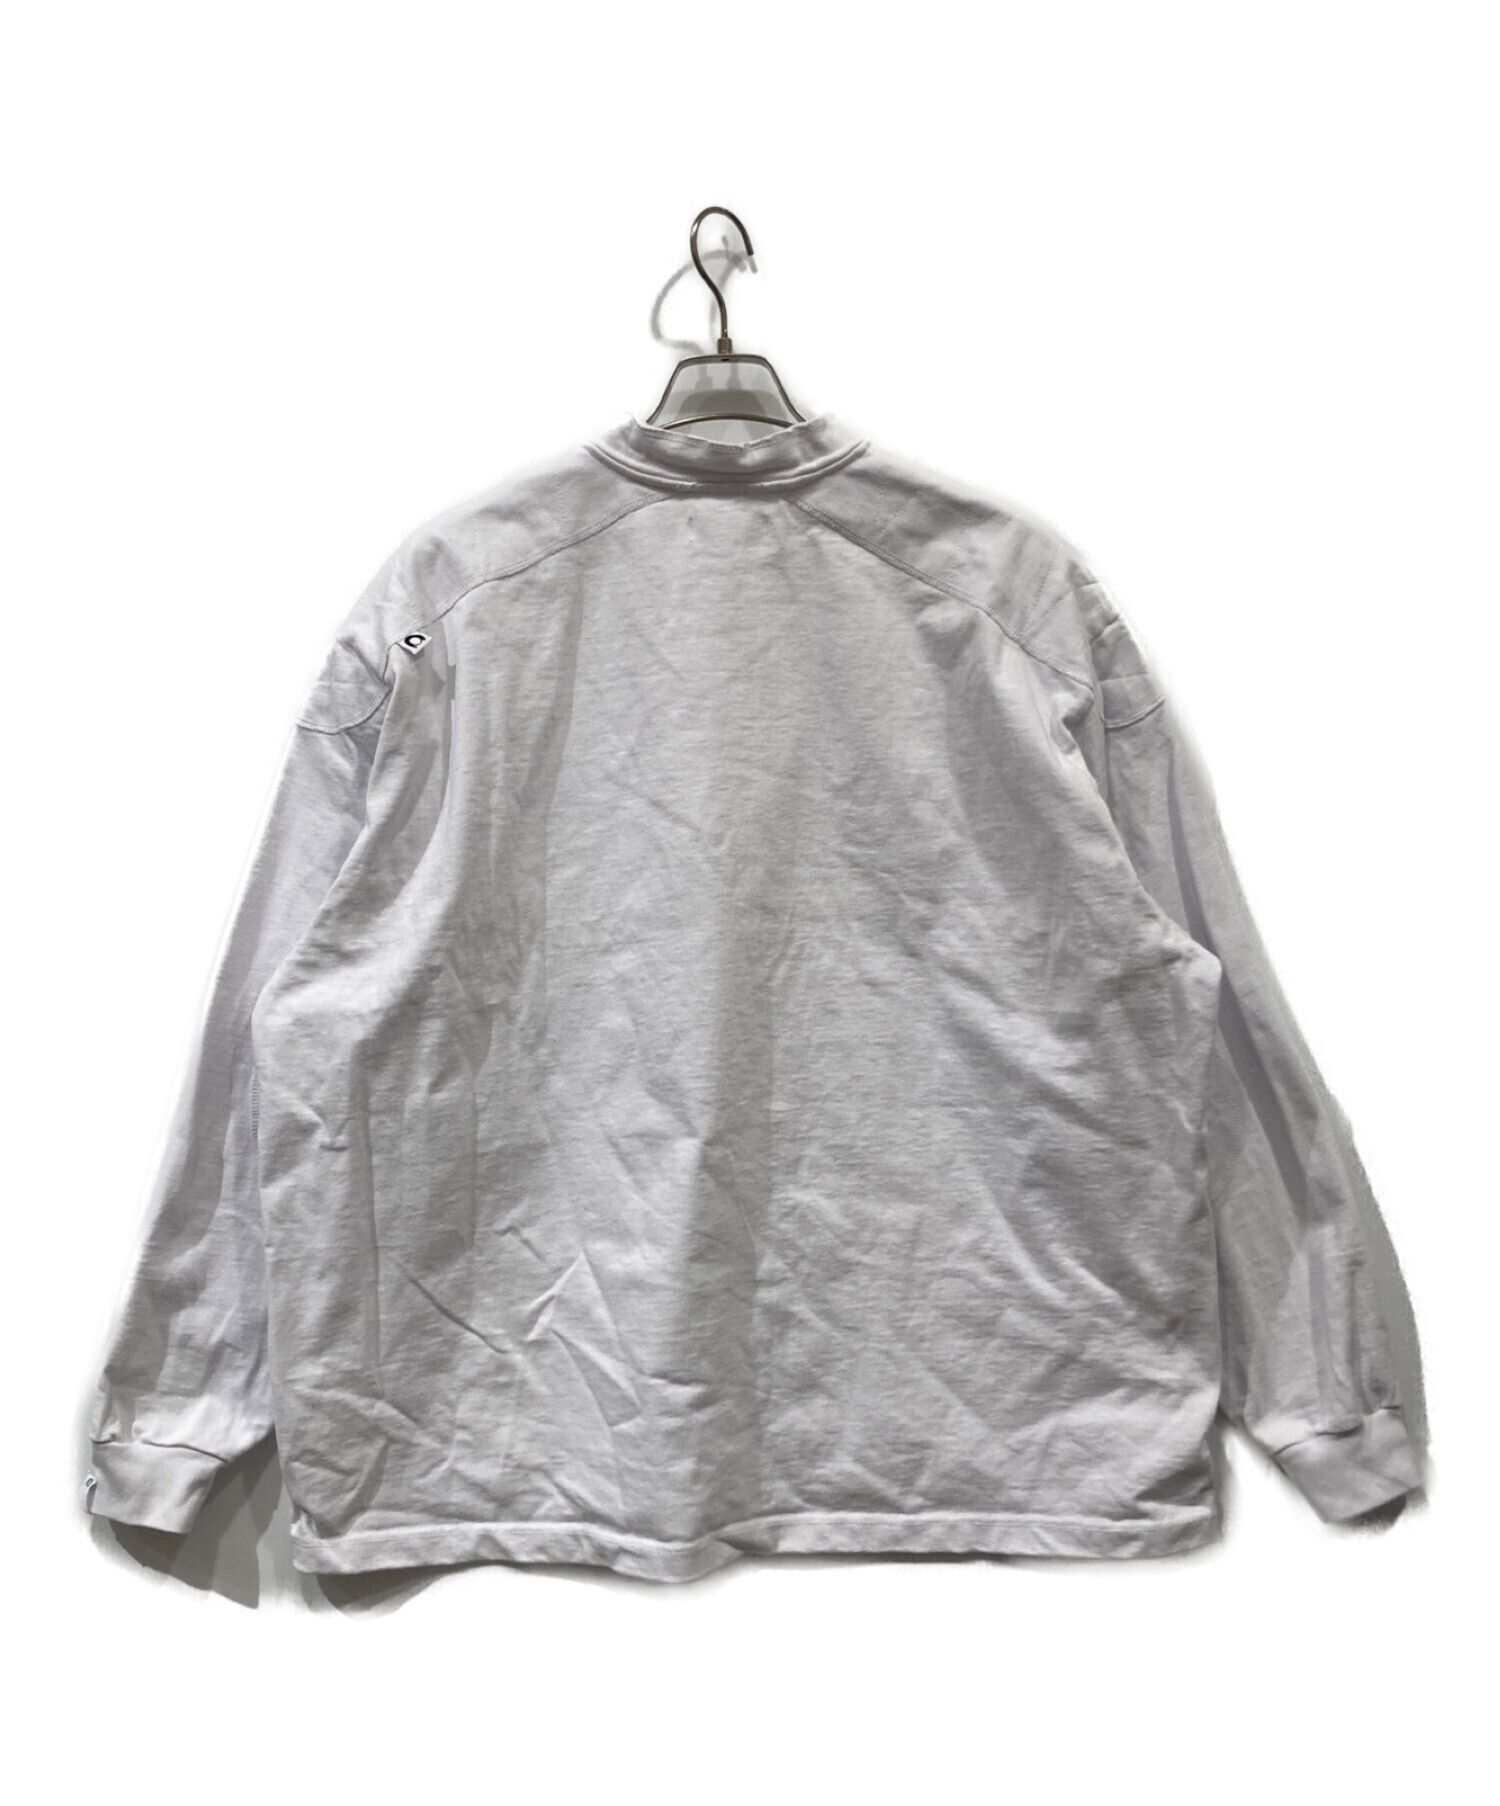 CAHLUMN (カウラム) Heavy Weight Jersey Rugger Shirt / ラガーシャツ / スウェット ホワイト サイズ:M